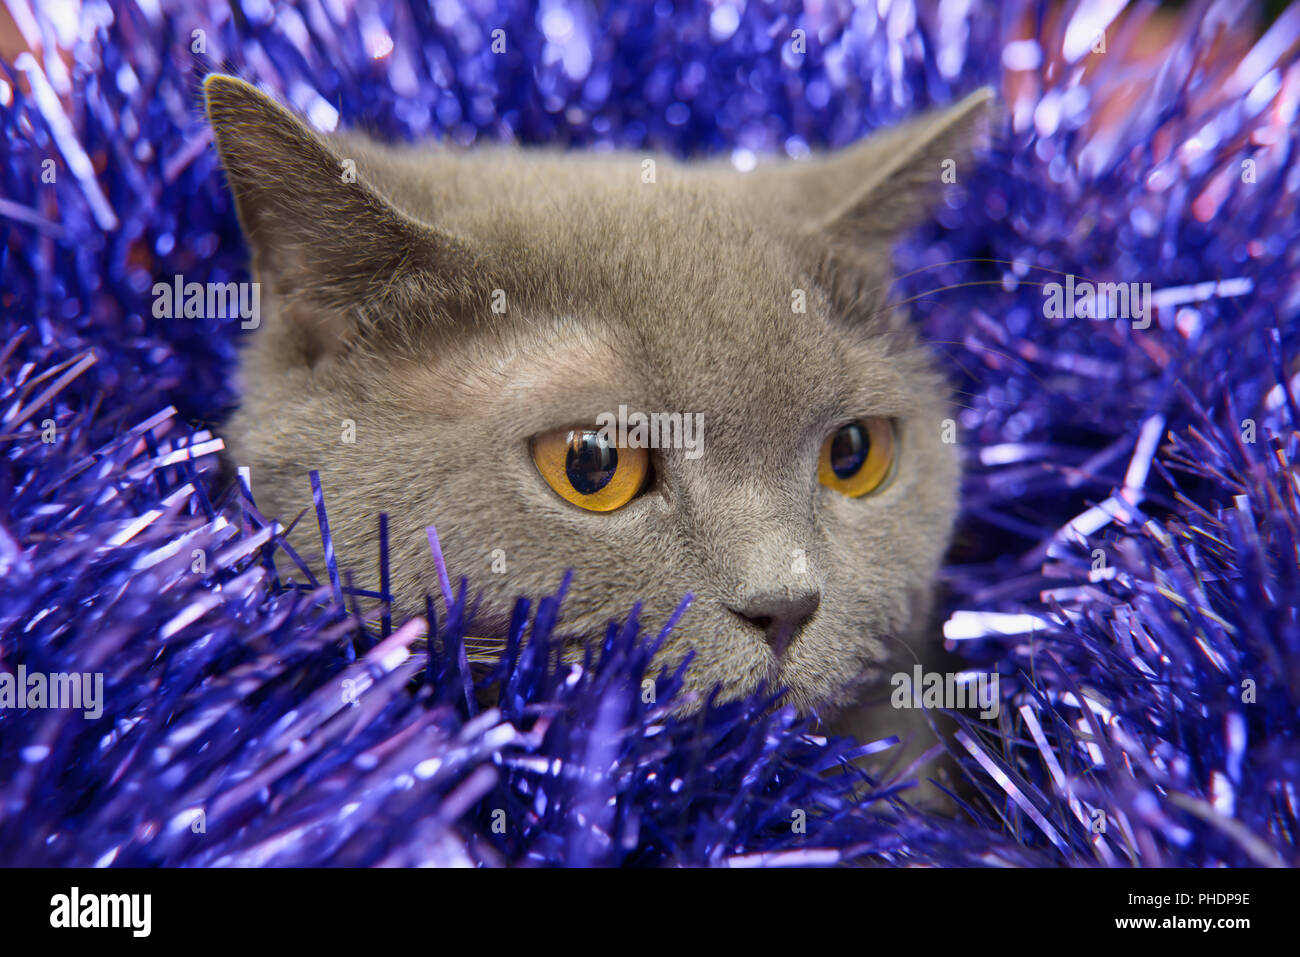 The British cat Christmas Stock Photo